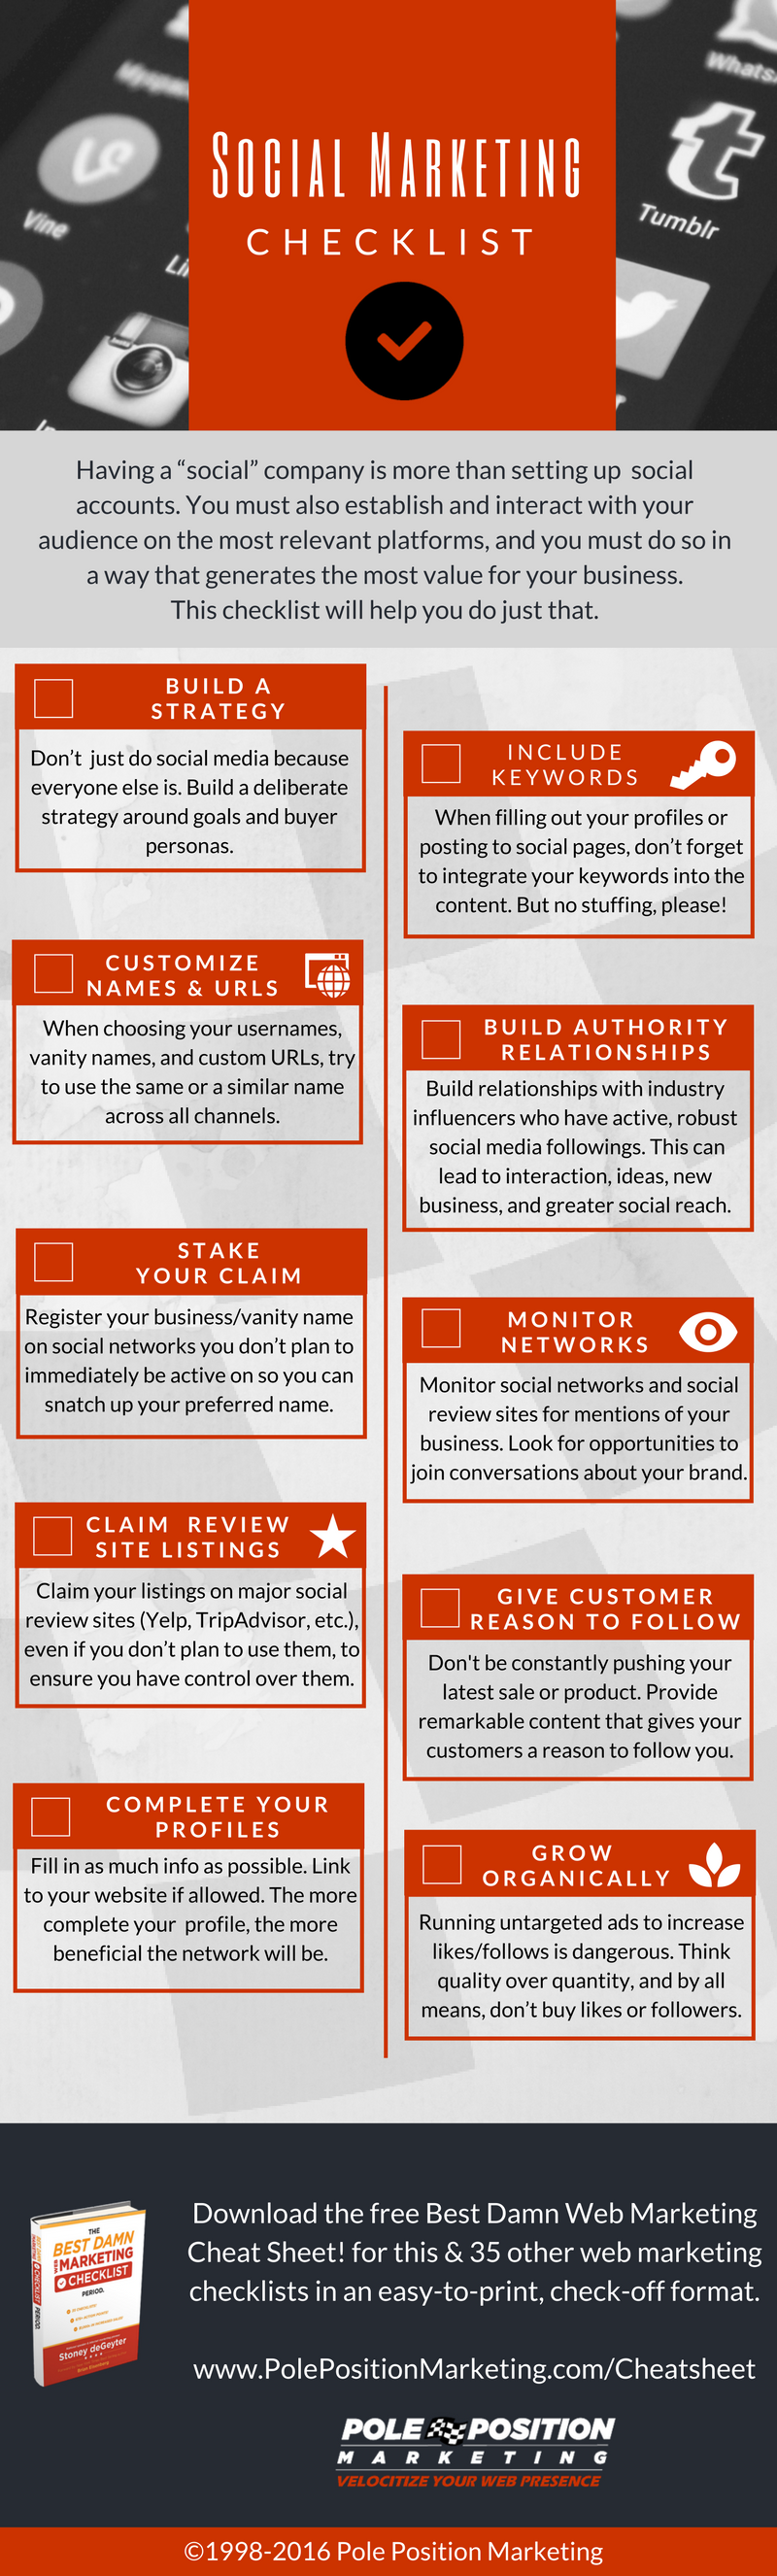 social marketing checklist